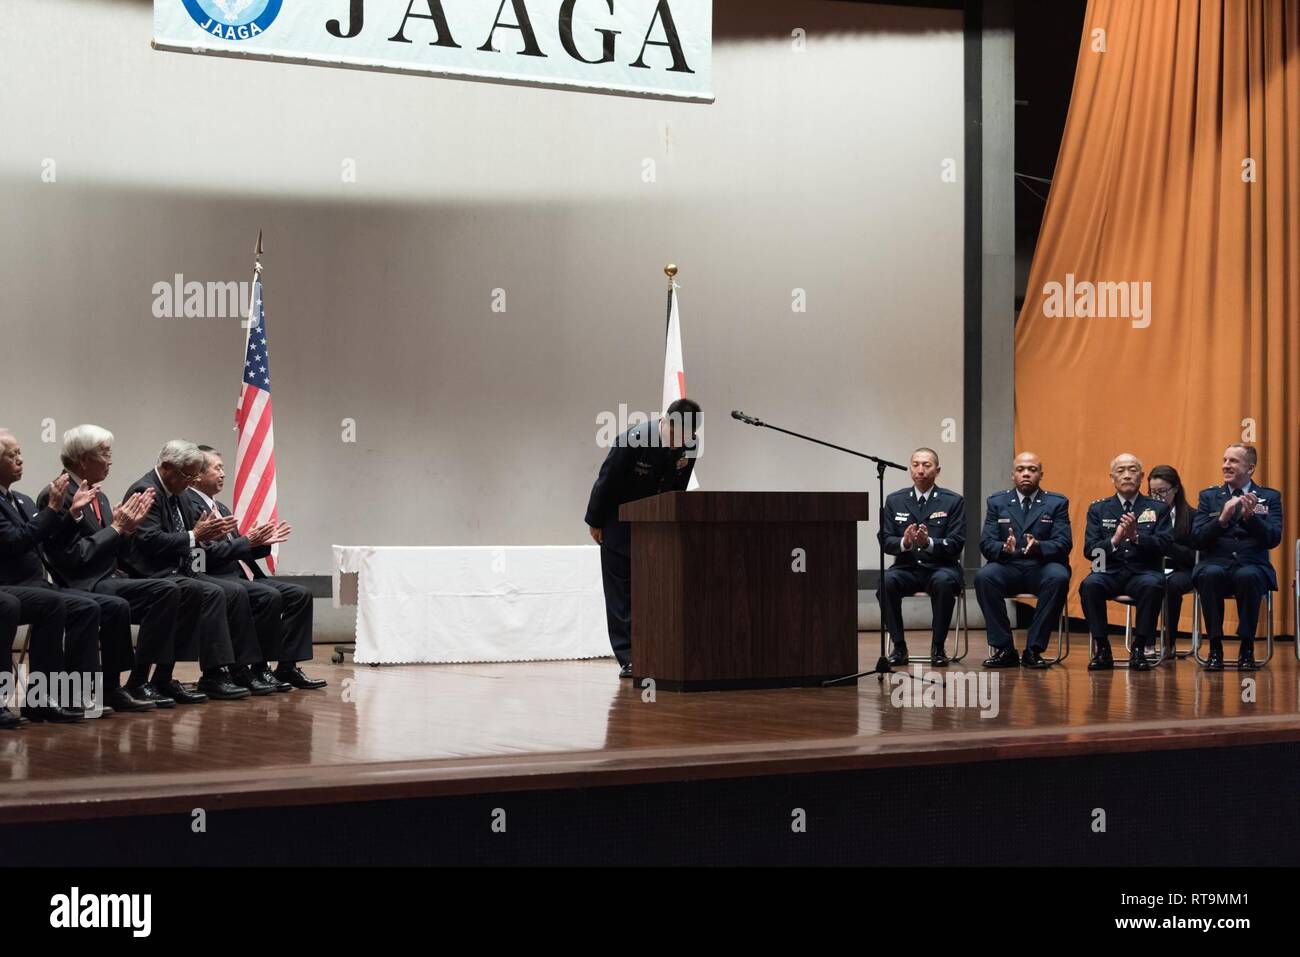 Japan Air Verteidigung-kraft Generalmajor Hidetada Inatsuki, Naha Air Base Commander, erkennt die Leistungen der Japan-America Air Force Goodwill Verband Preisträger und die Bedeutung der Partnerschaft im Jahr 2018 JAAGA Preisverleihung am 31. Januar 2019, in Naha, Japan. Die Japan-US-Allianz ist die Grundlage nicht nur für den Frieden und die Sicherheit Japans, sondern auch für diejenigen der Asien-Pazifik-Region. Japan-US-Zusammenarbeit auf der Grundlage der Allianz eine wichtige Rolle in der Zusammenarbeit in Sicherheitsfragen der Welt spielt. Stockfoto